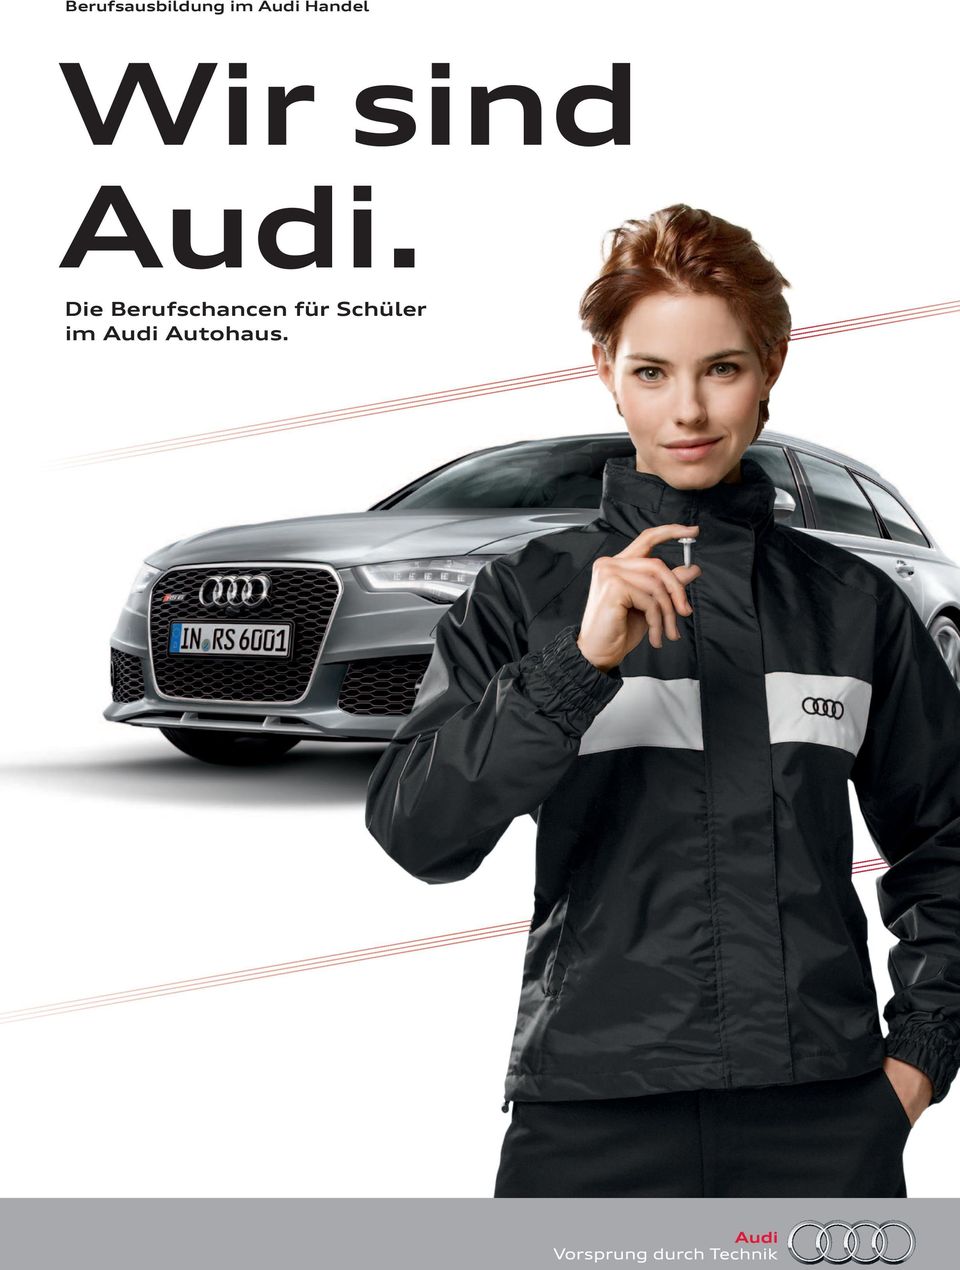 Audi. Die Berufschancen